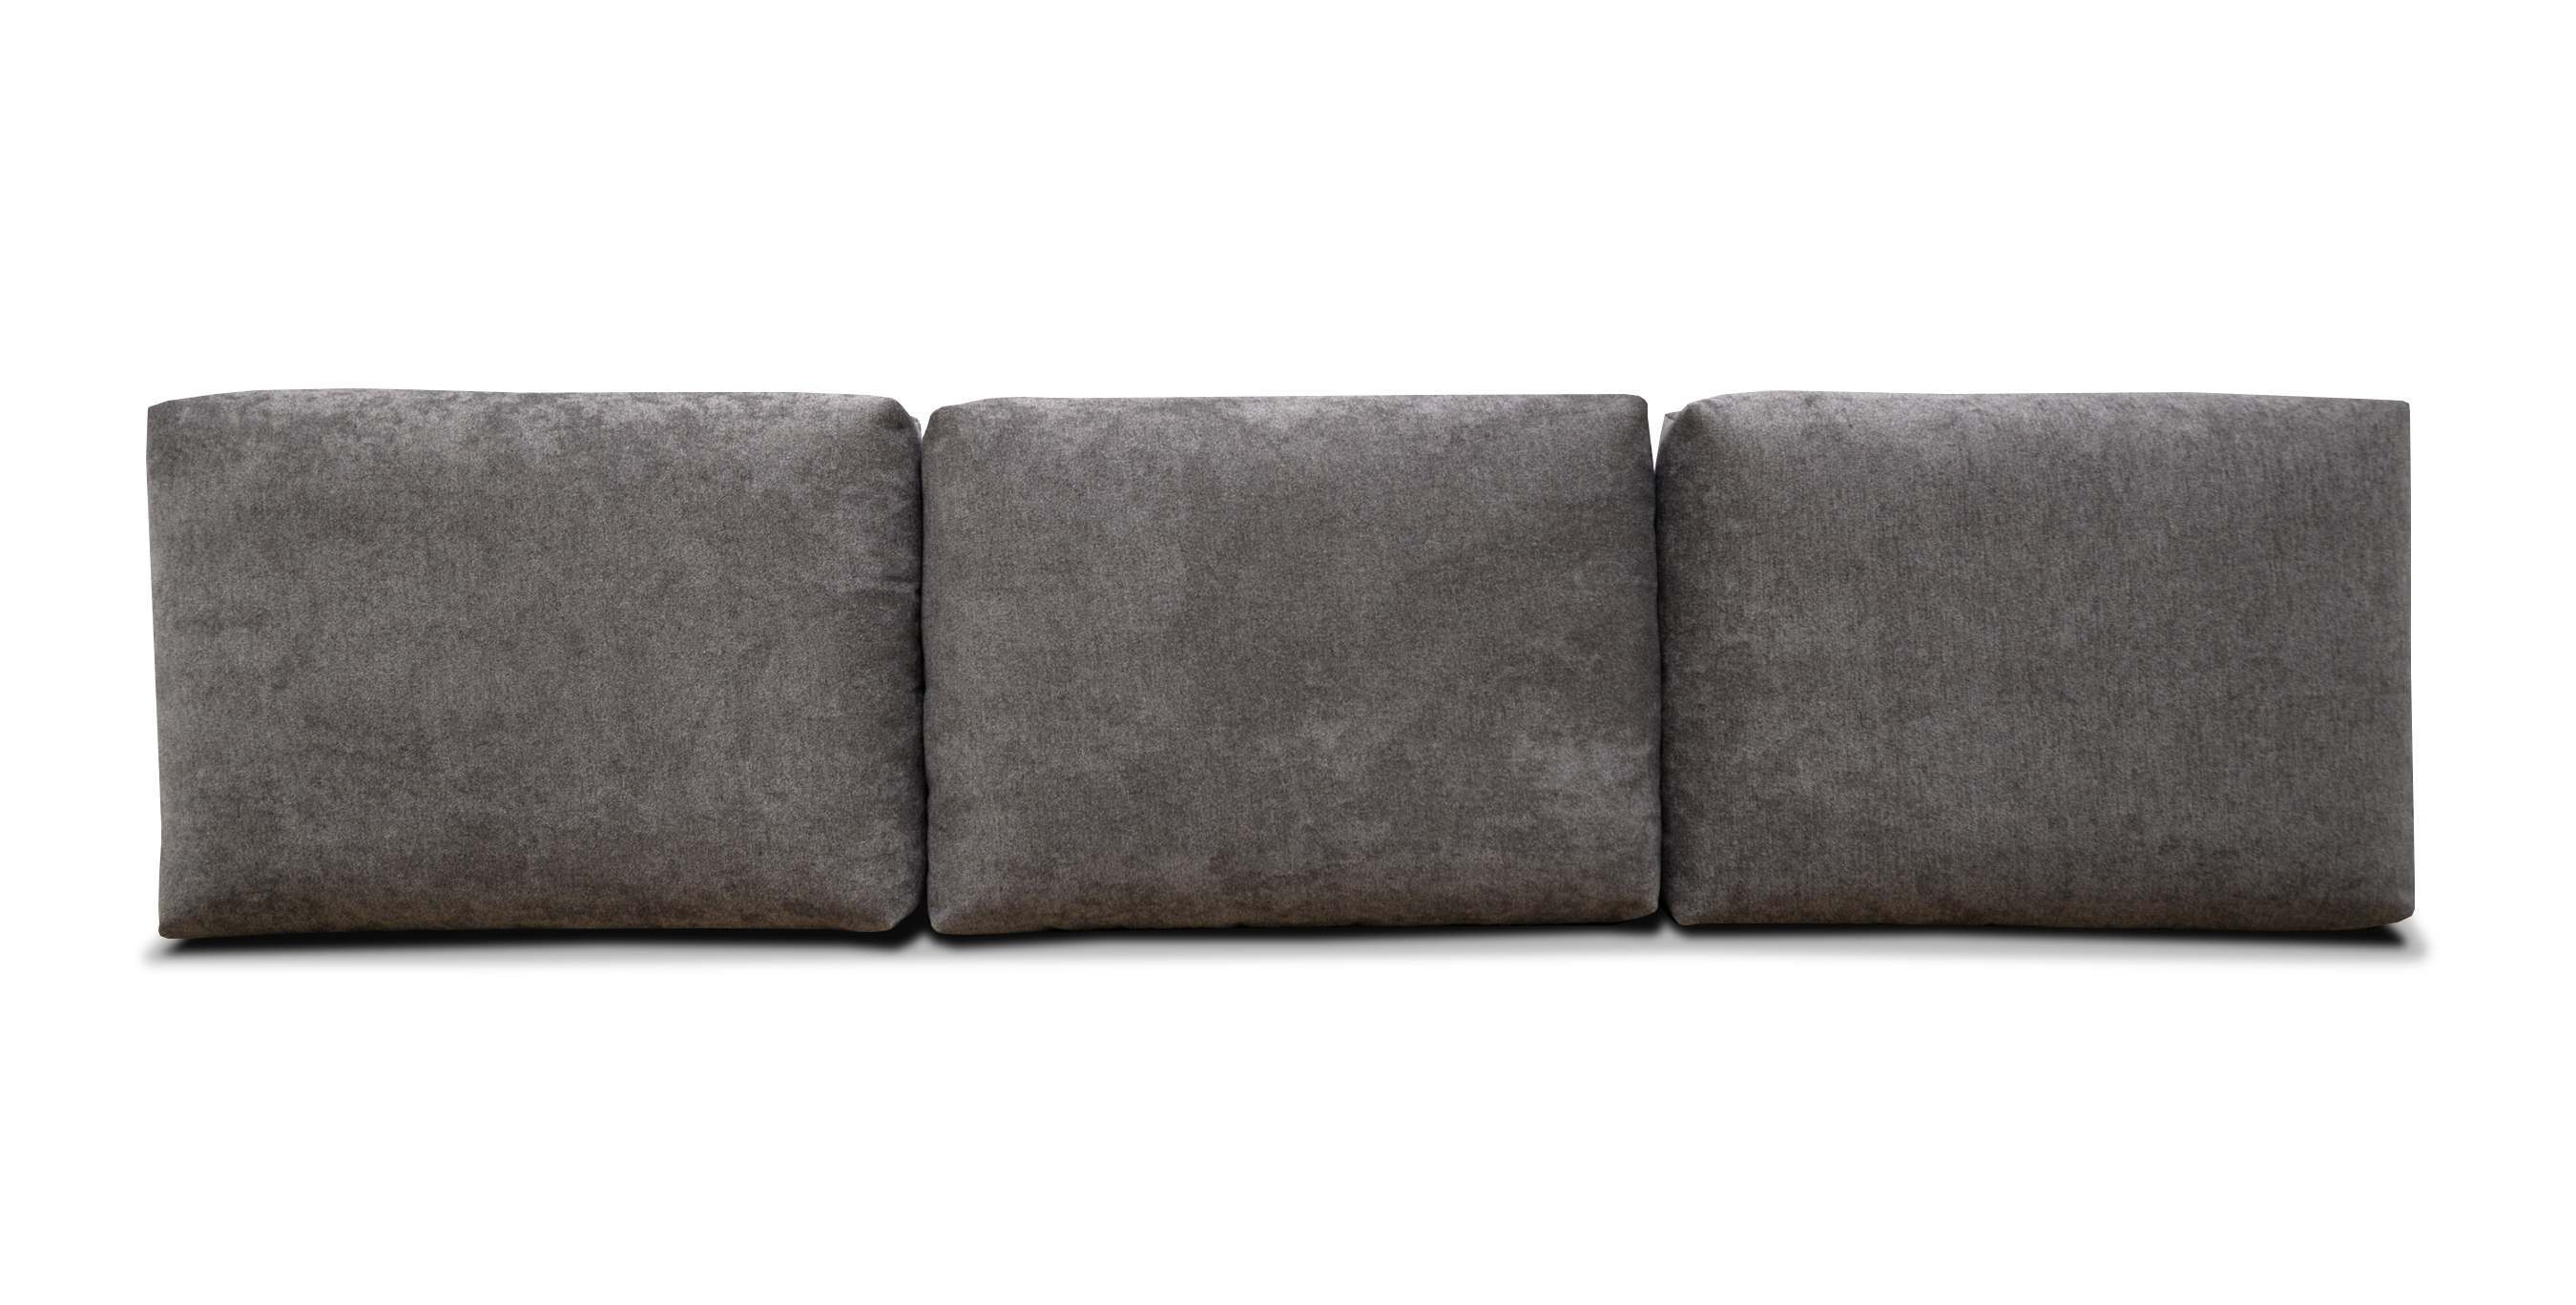 мягкие большие подушки для дивана